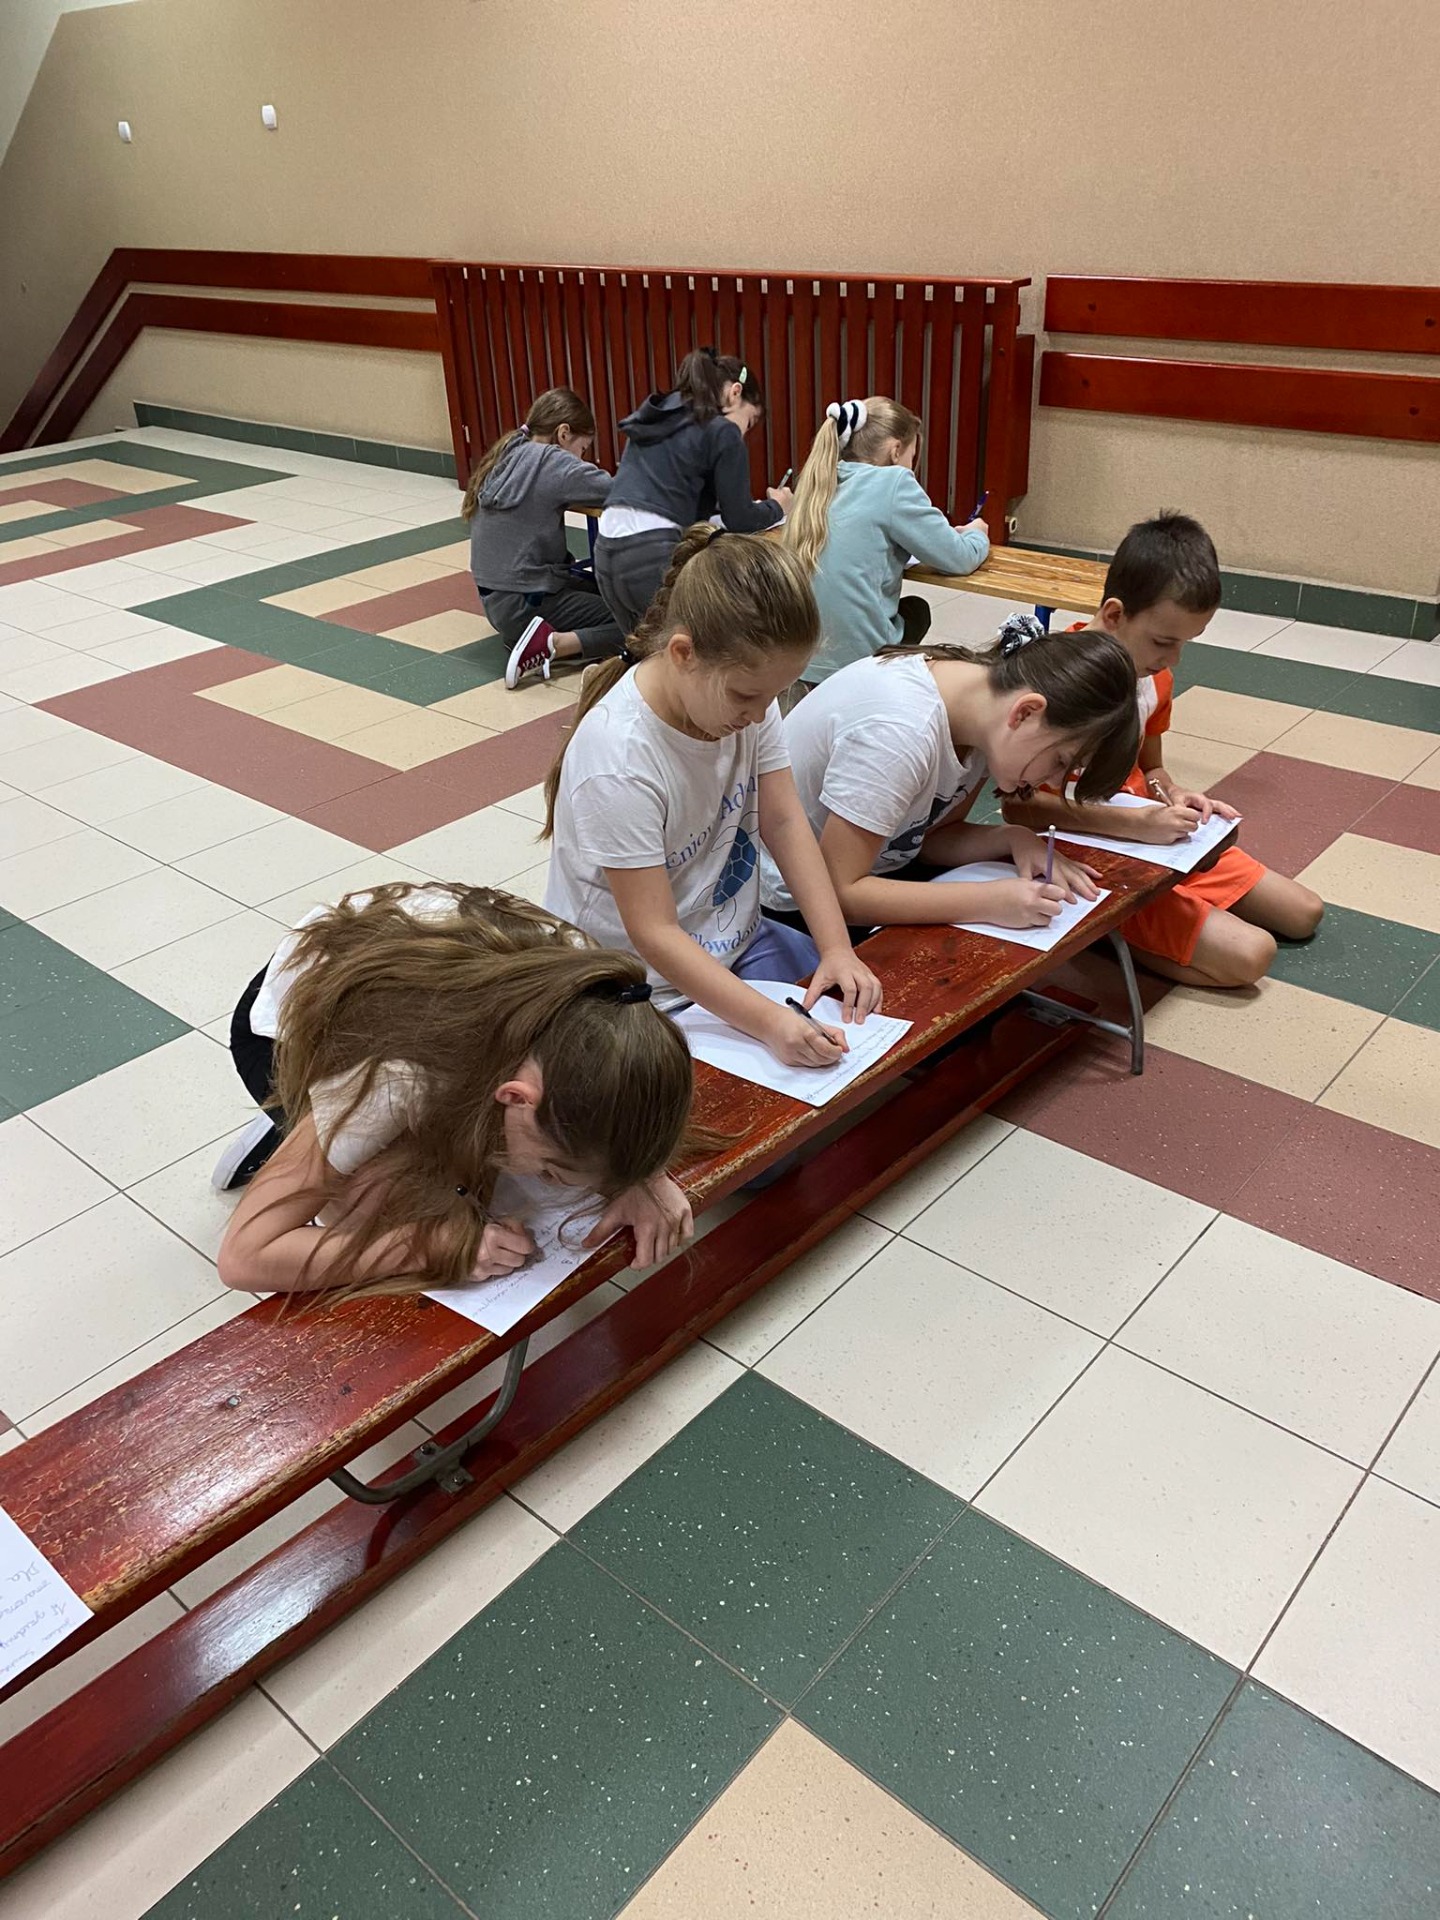 Uczniowie piszą dyktando na ławce na szkolnym korytarzu